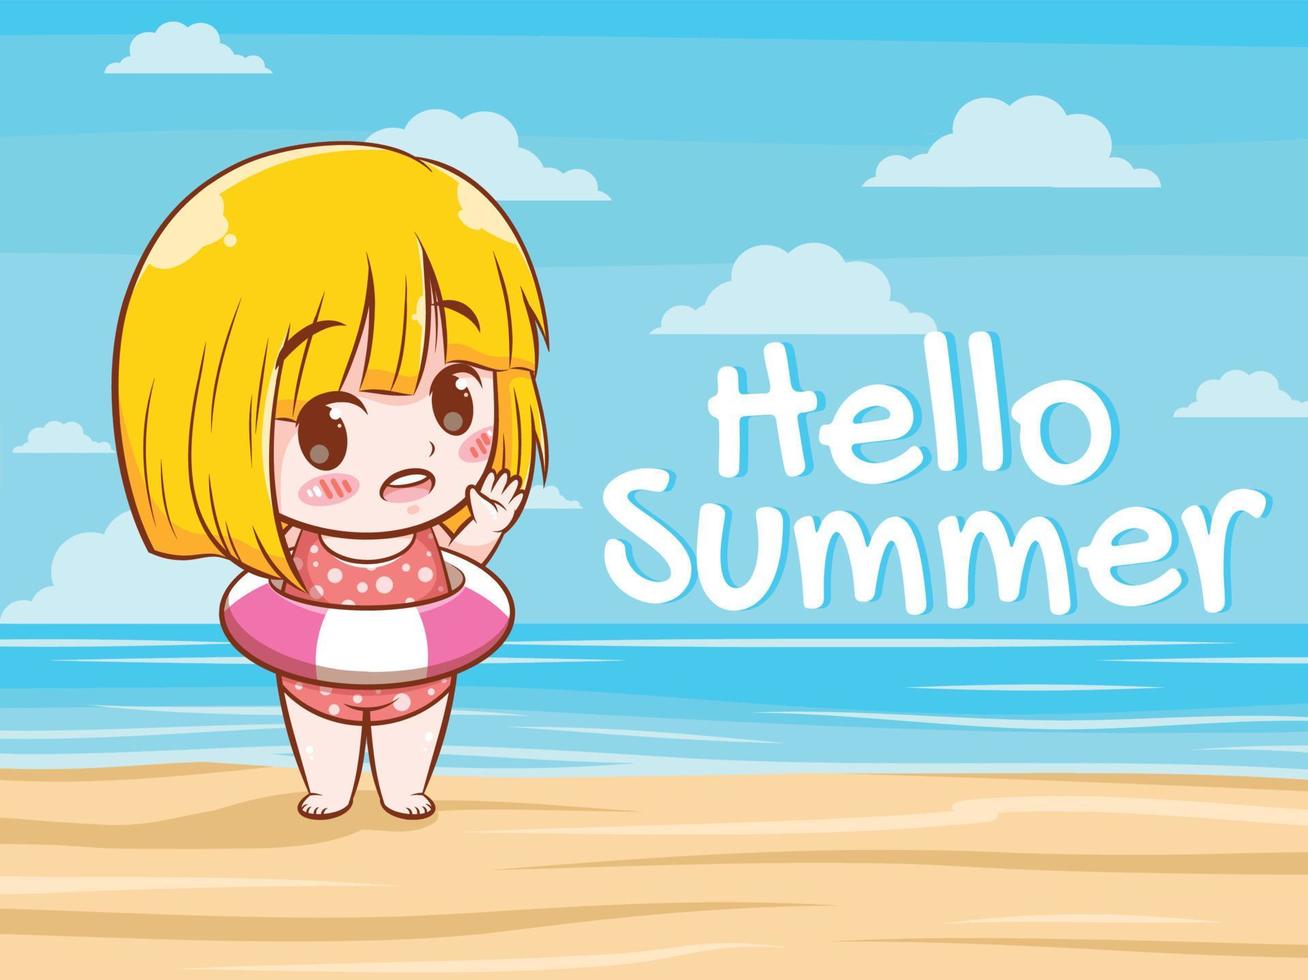 una linda chica dice hola verano. Ilustración de concepto de saludo de verano. vector